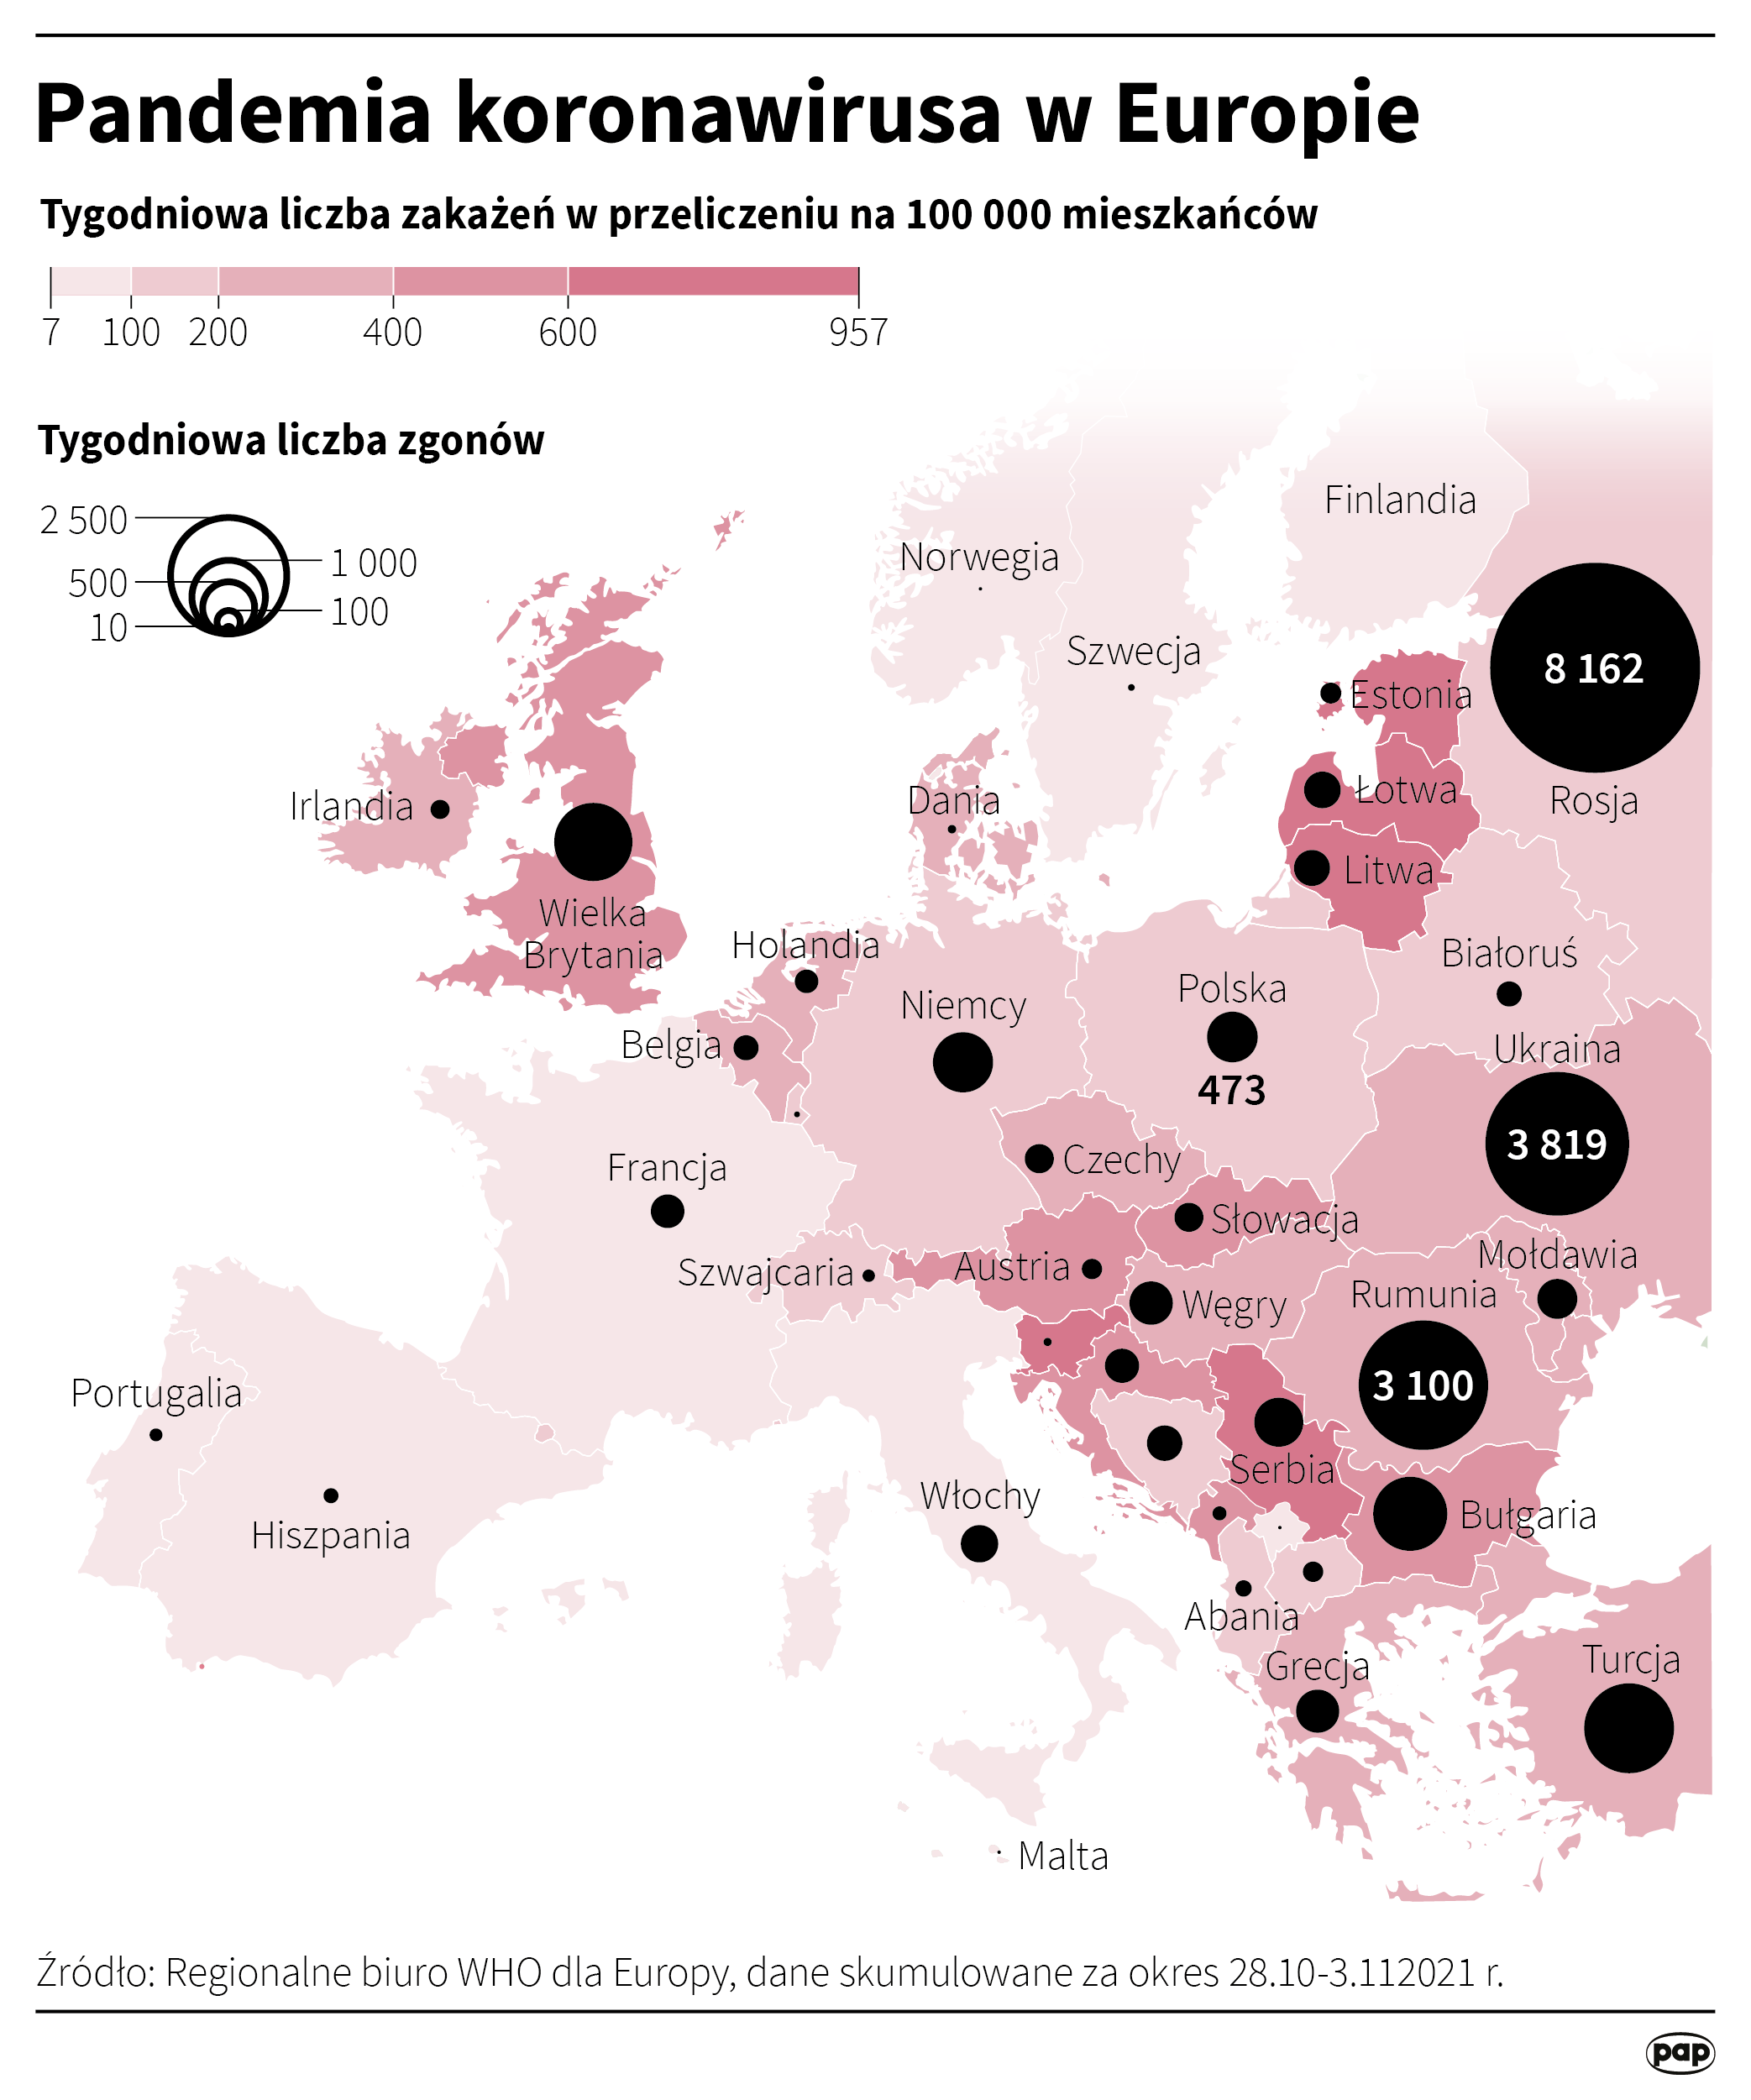 Pandemia koronawirusa w Europie [Autor: Maciej Zieliński, PAP]